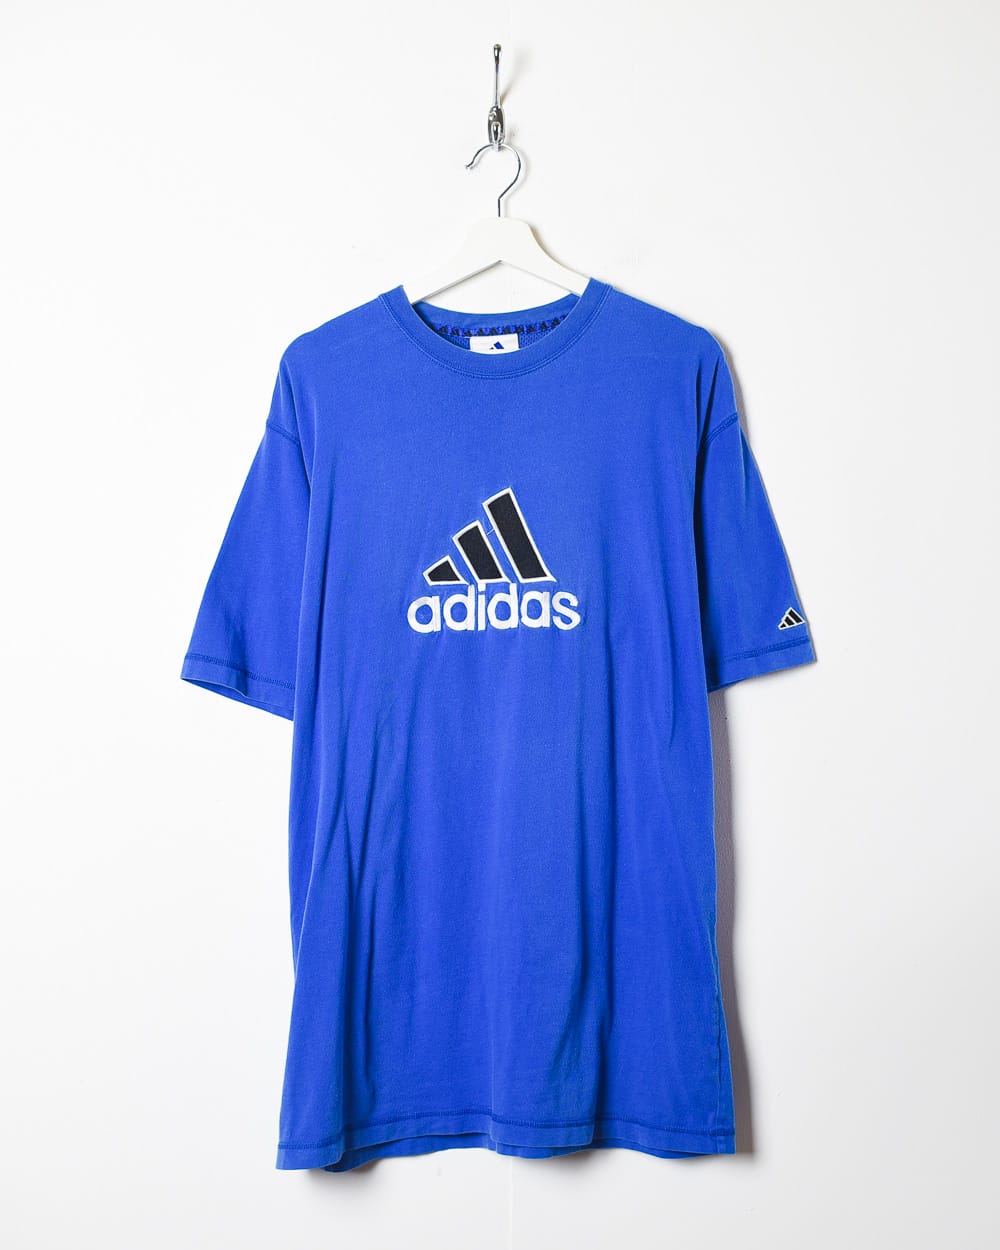 Blue Adidas T-Shirt - Oversized